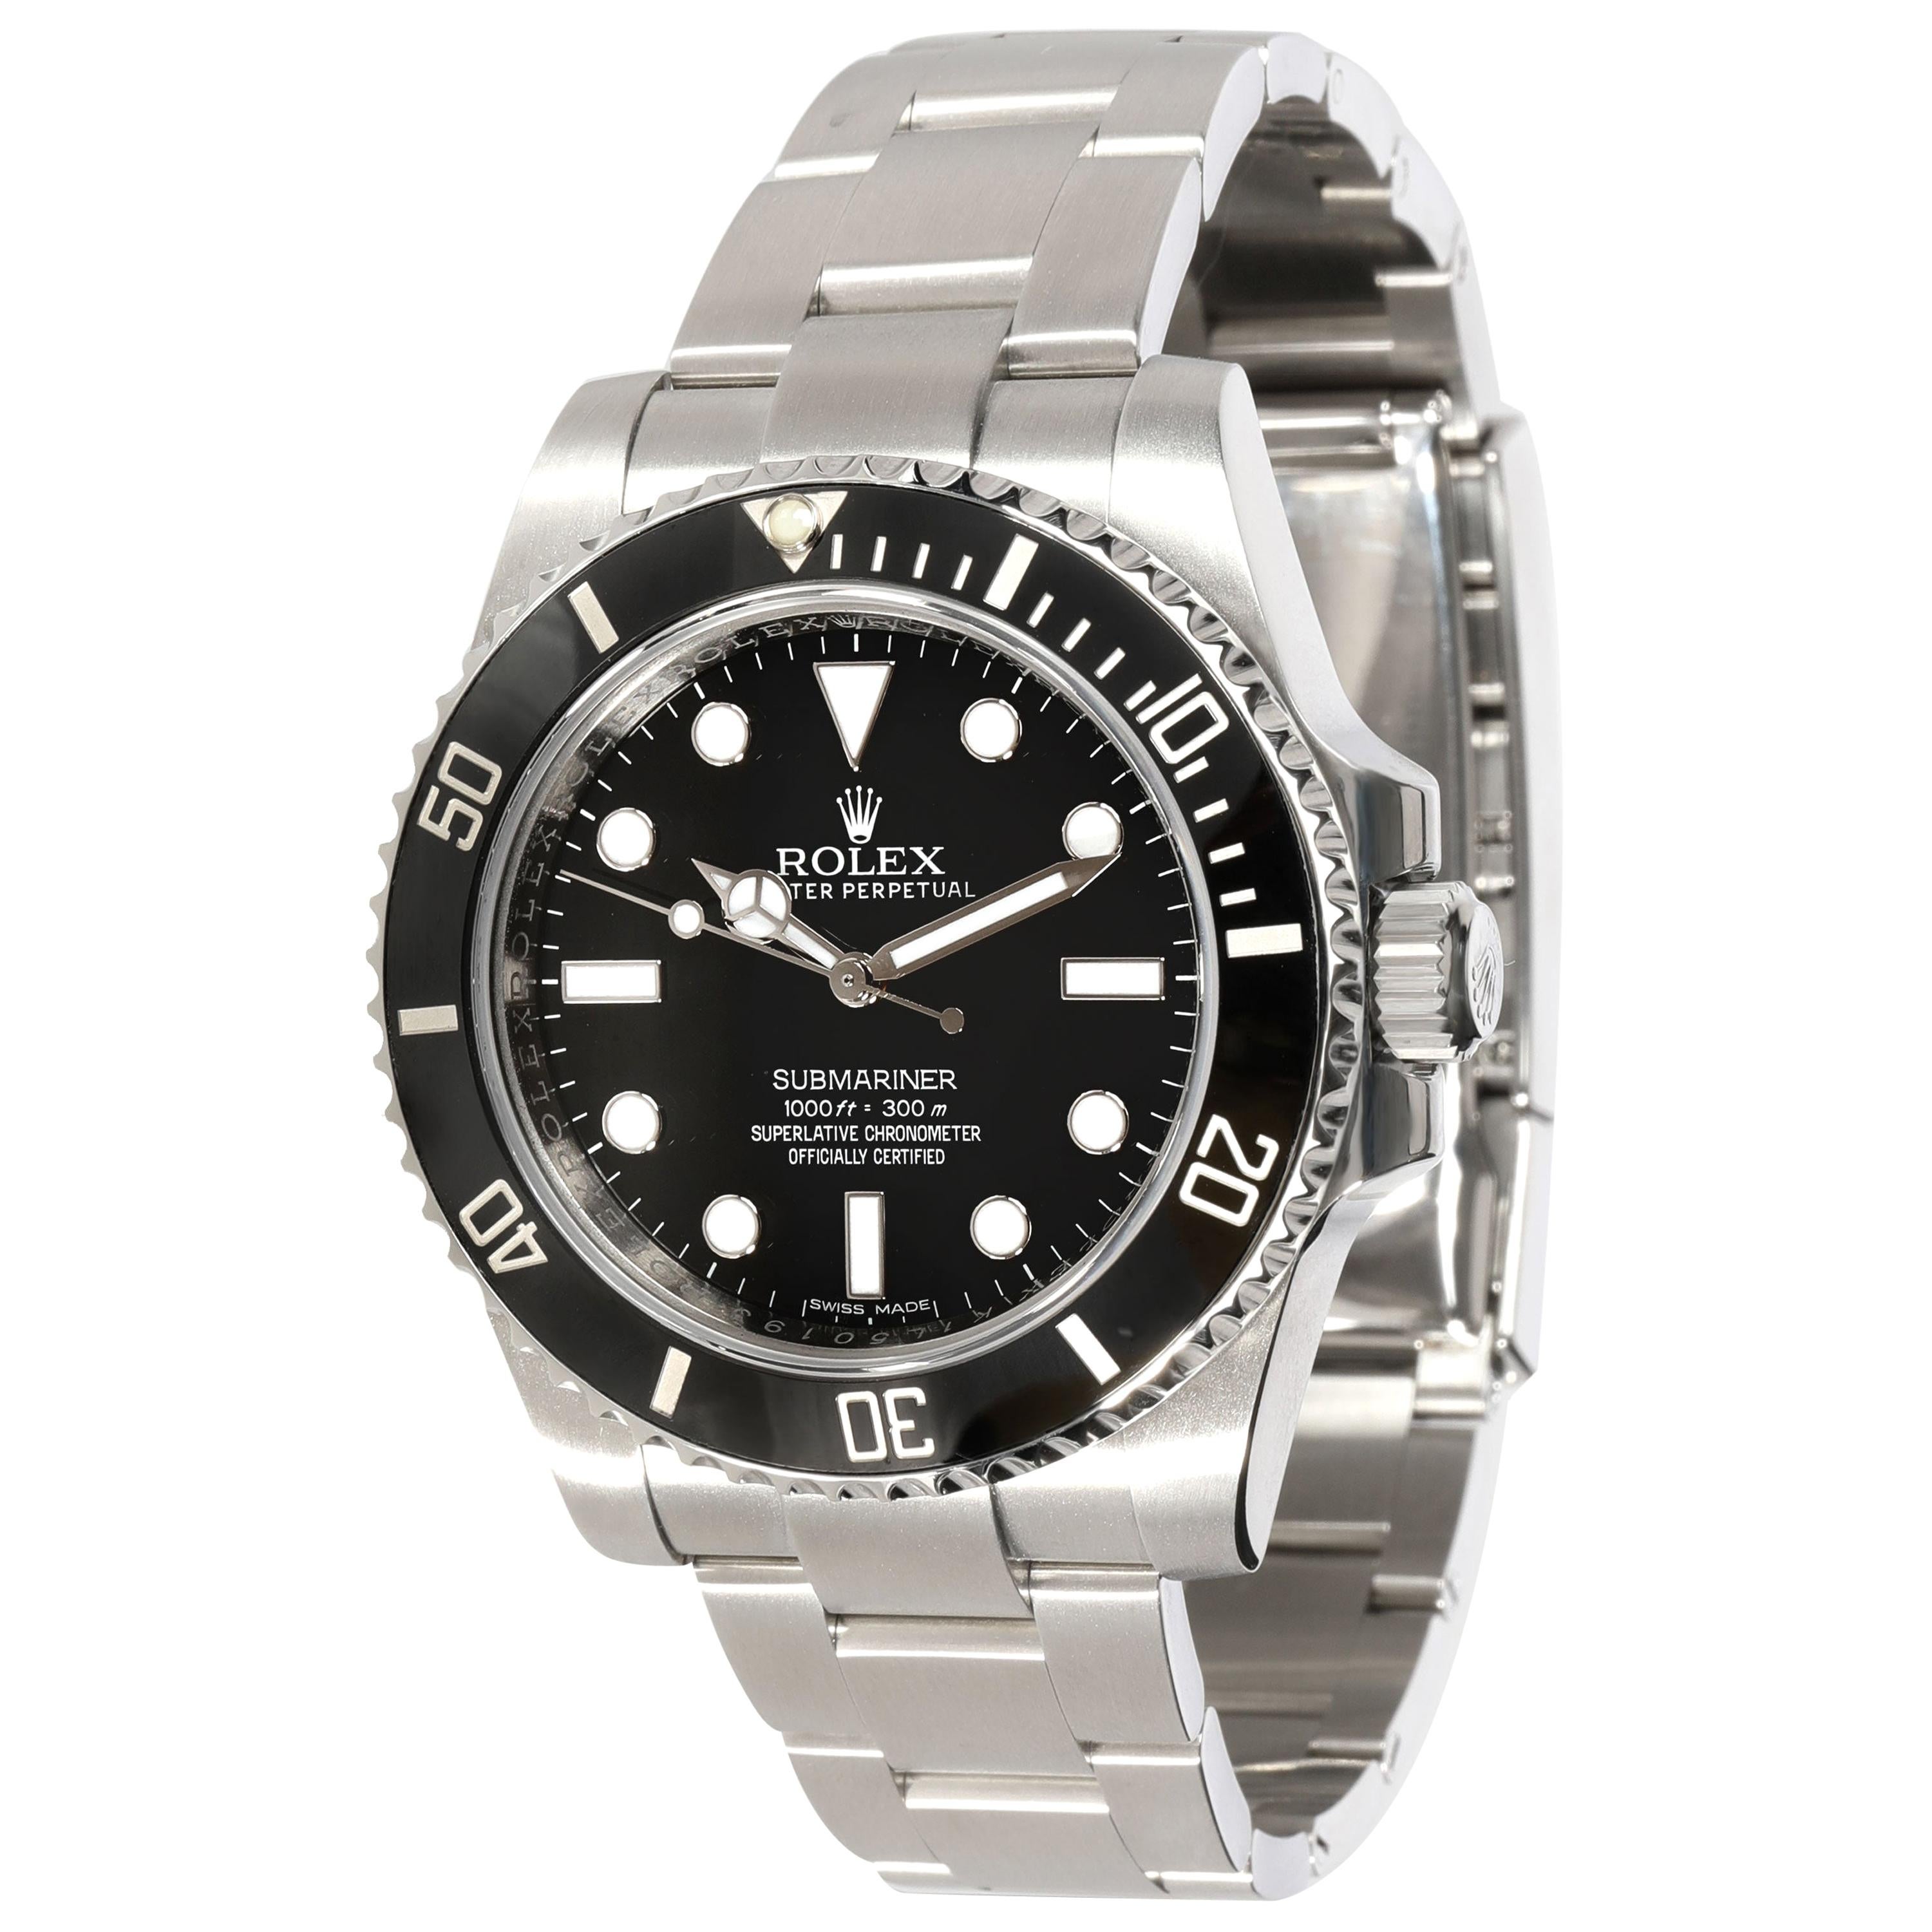 Rolex Submariner 114060 Men's Watch in Stainless Steel